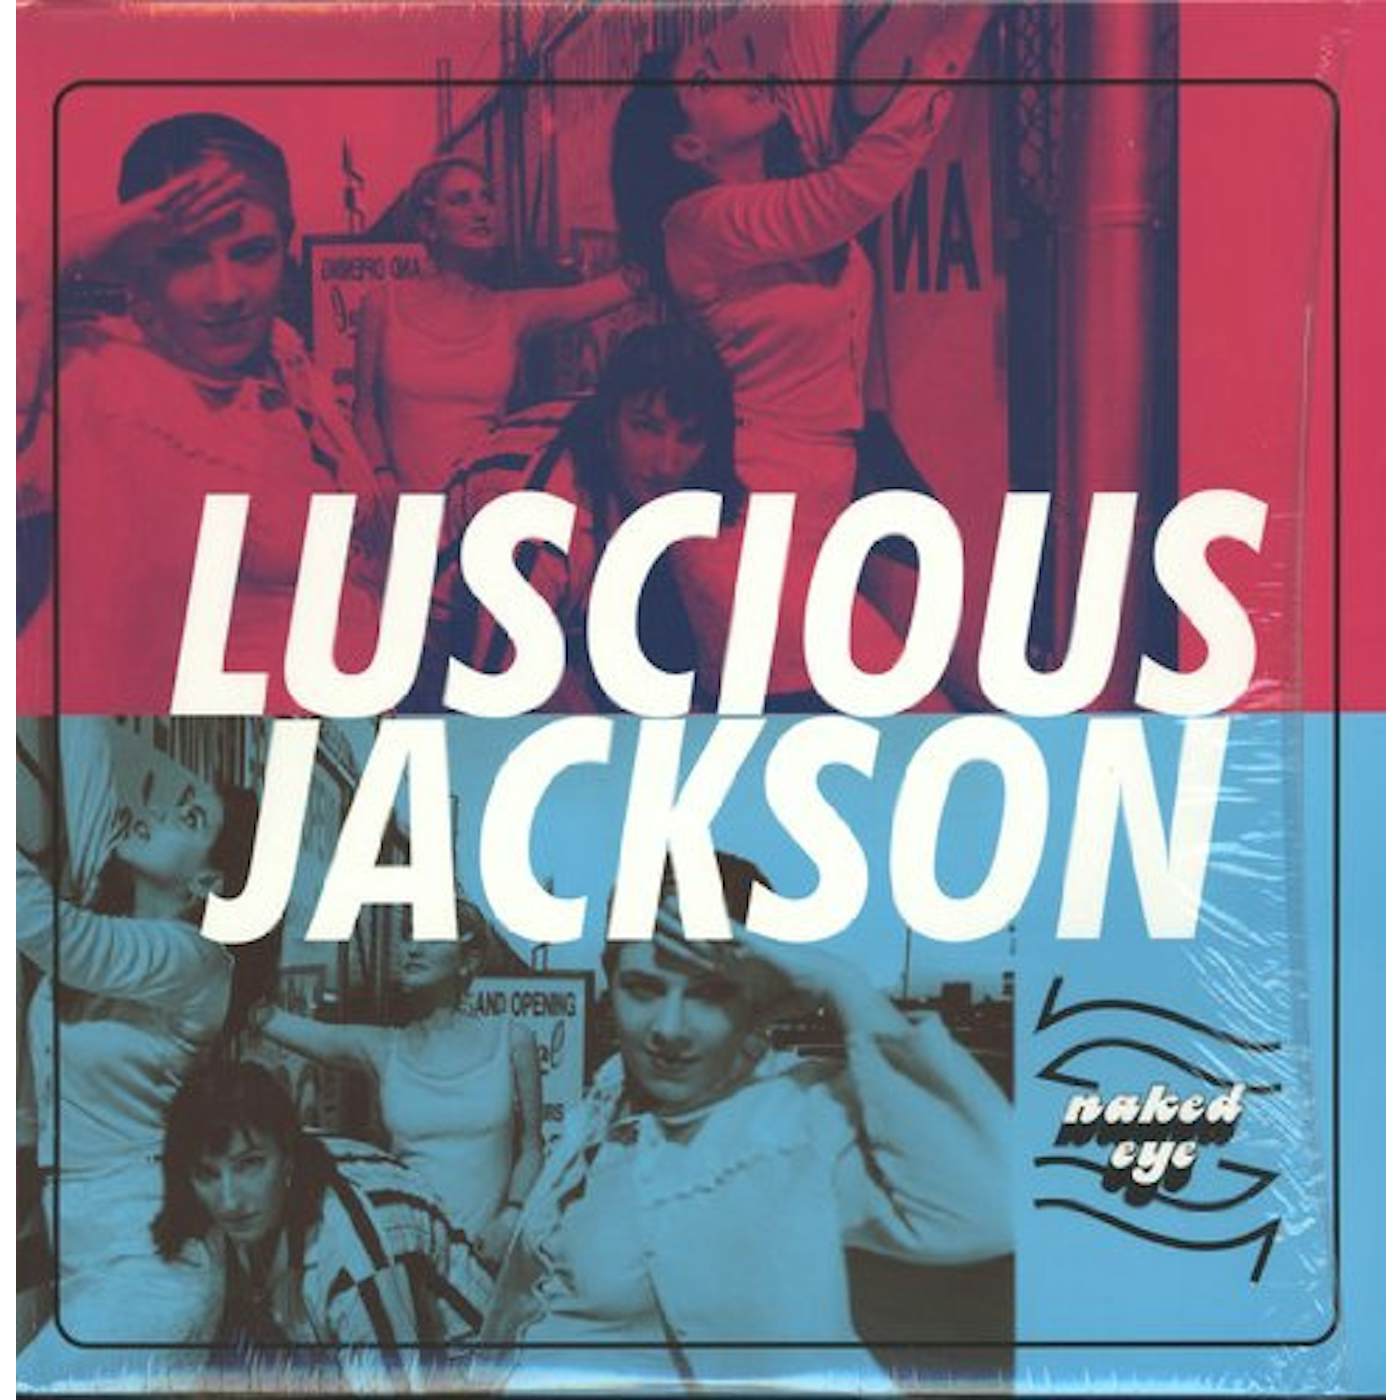 Luscious Jackson Naked Eye Vinyl Record